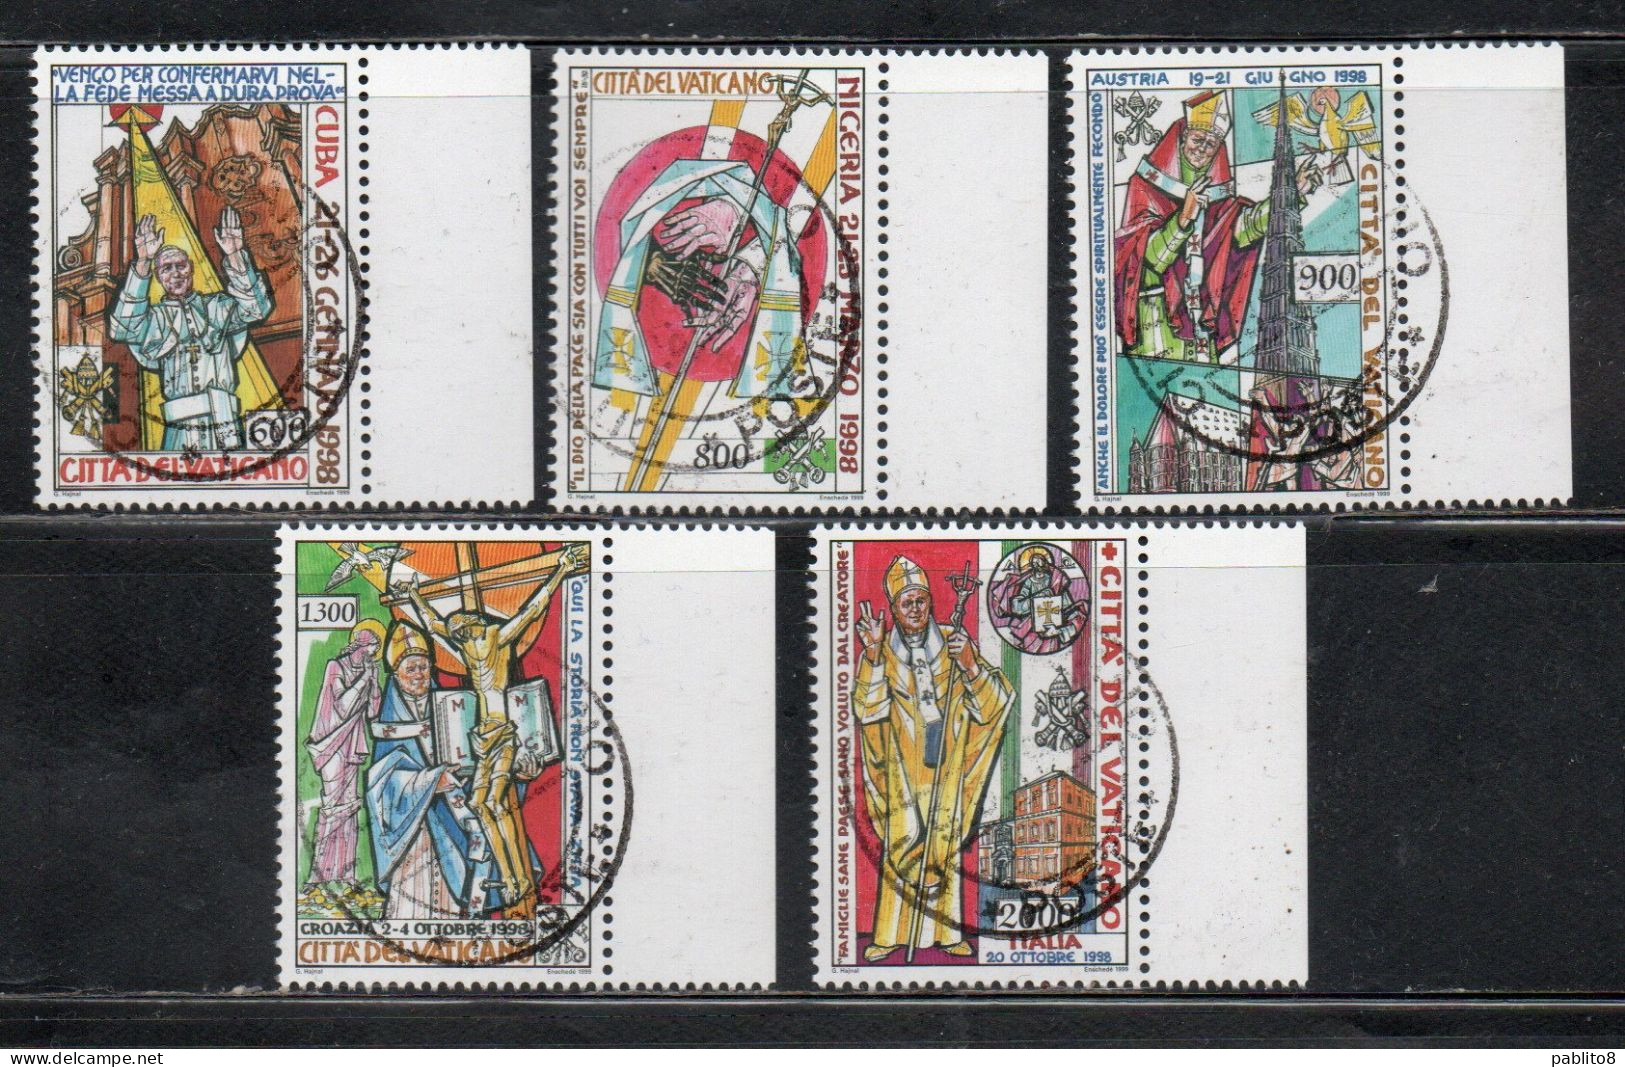 CITTÀ DEL VATICANO VATICAN VATIKAN 1999 I VIAGGI DEL PAPA NEL MONDO 1998 POPE TRAVELS SERIE COMPLETA FULL SET USATA USED - Used Stamps